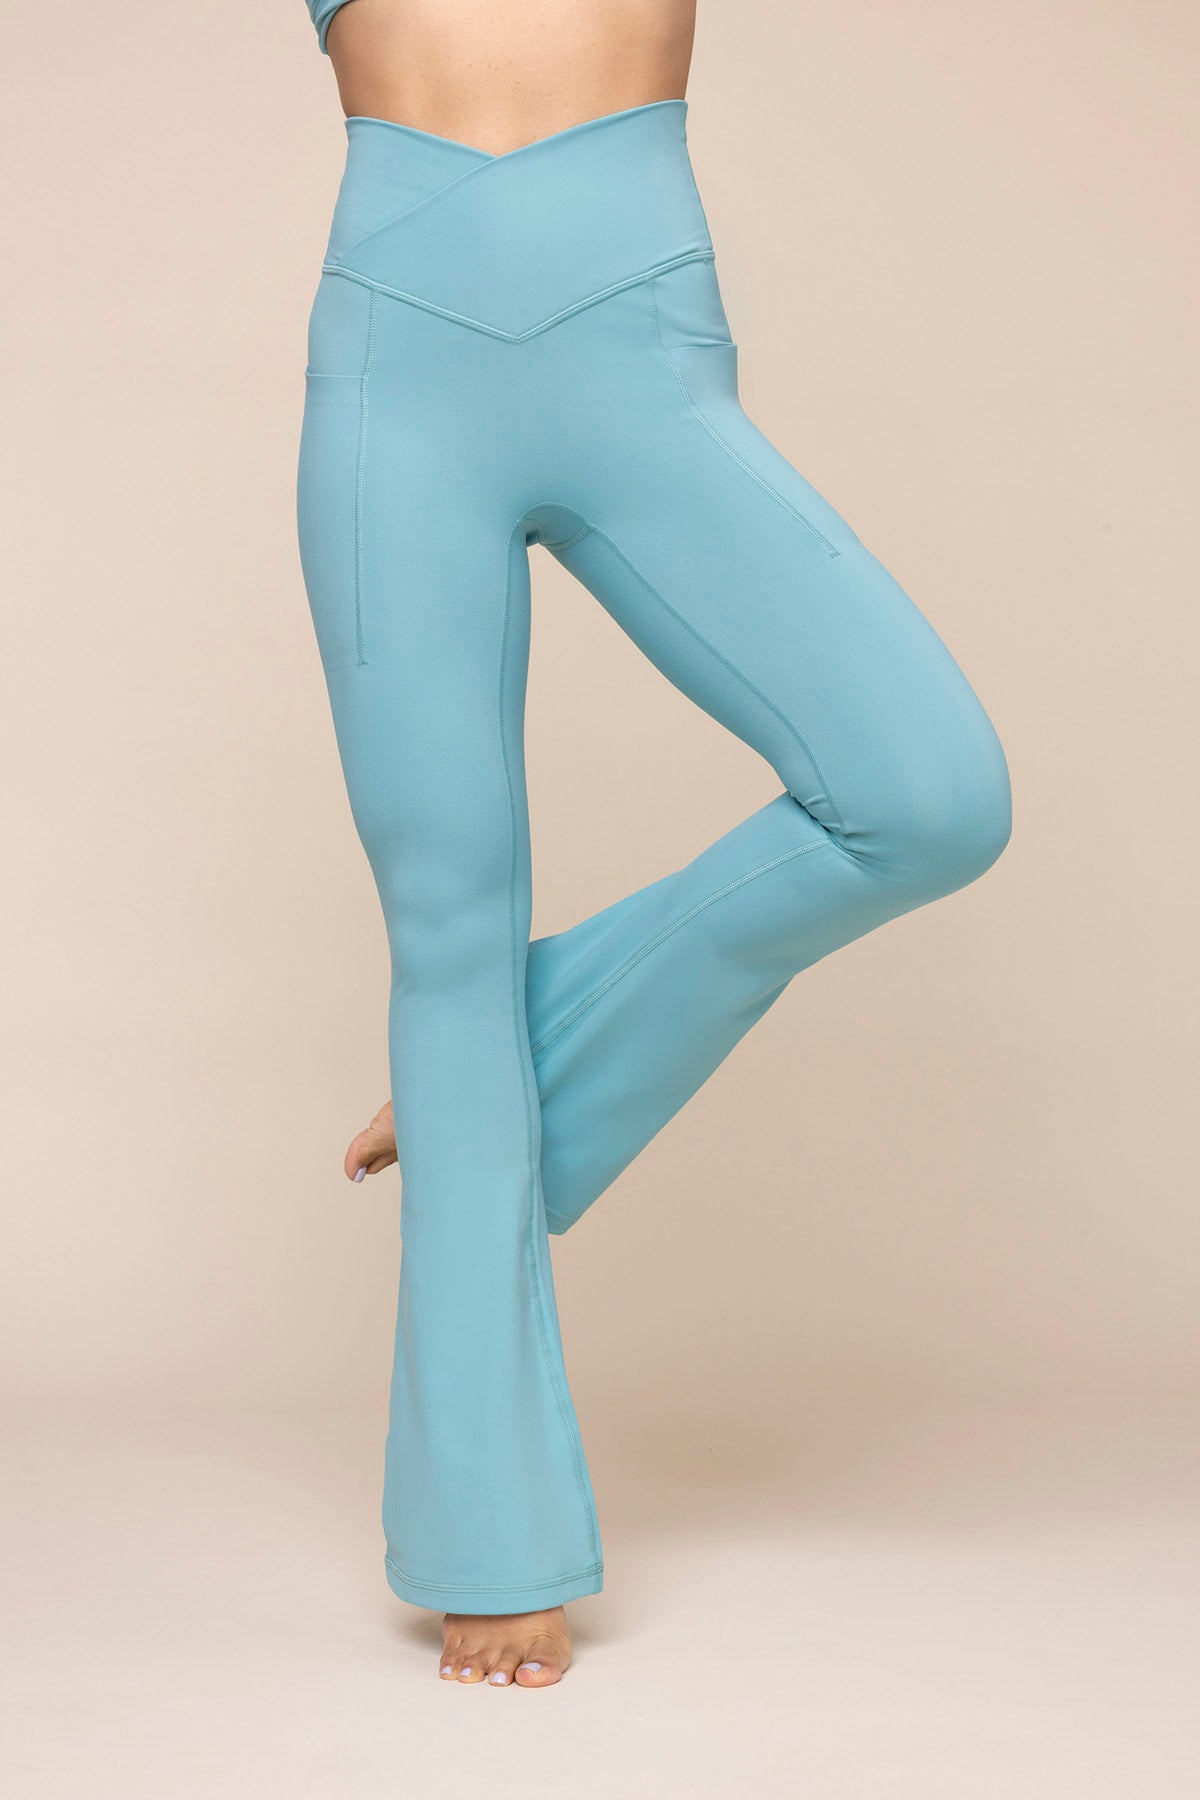 POPFLEX Active Believe 7/8 Leggings in Mint, Women's Fashion